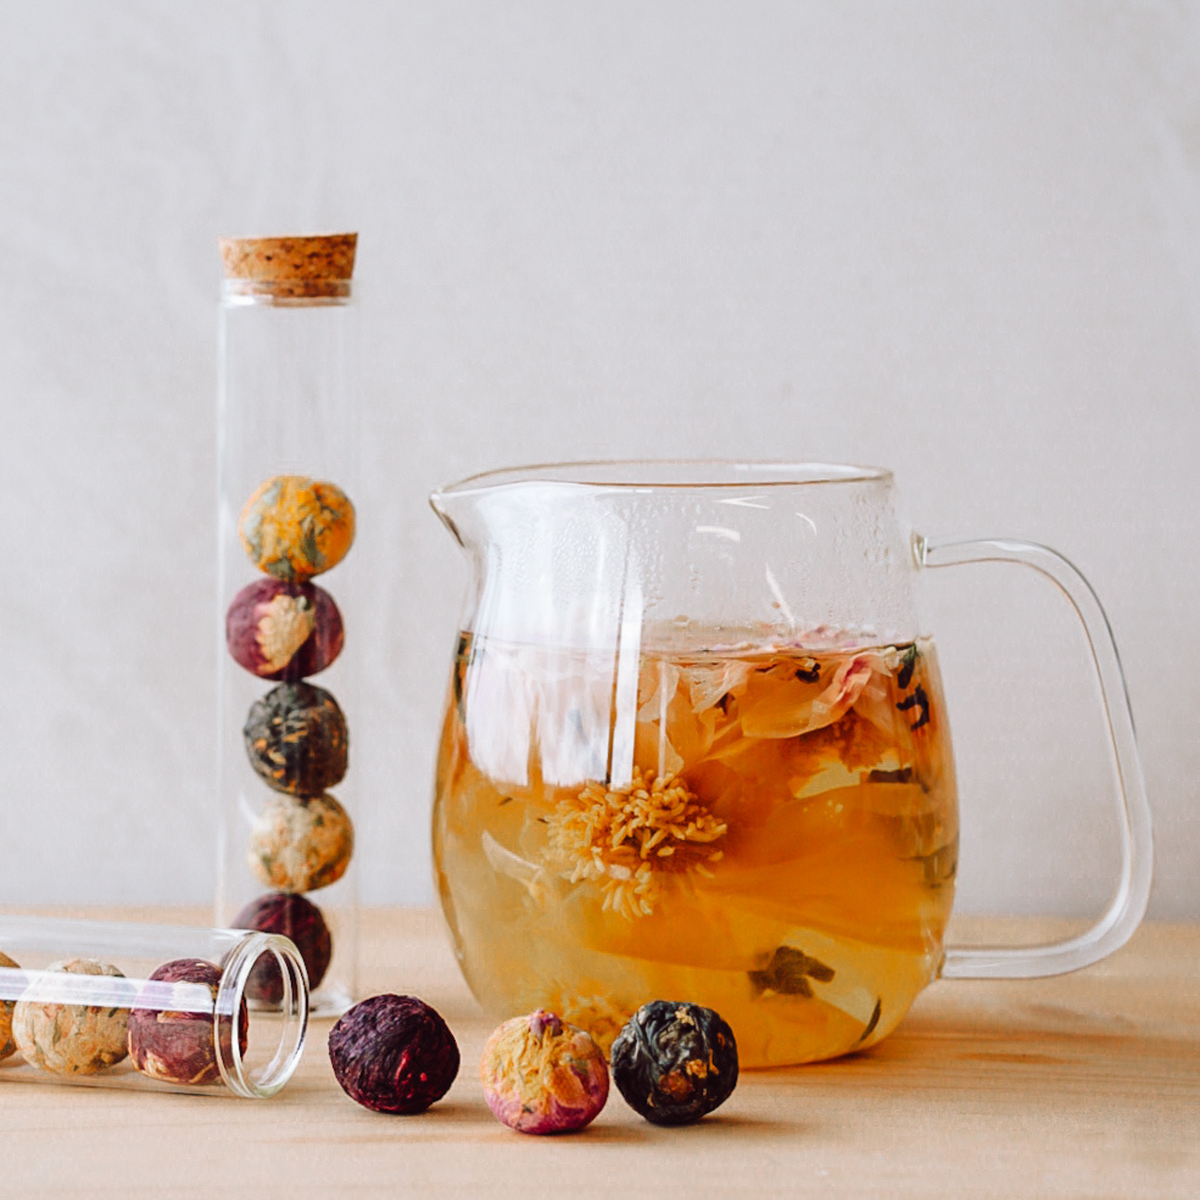 Better Tea - Blooming Tea Balls (in glass tube)